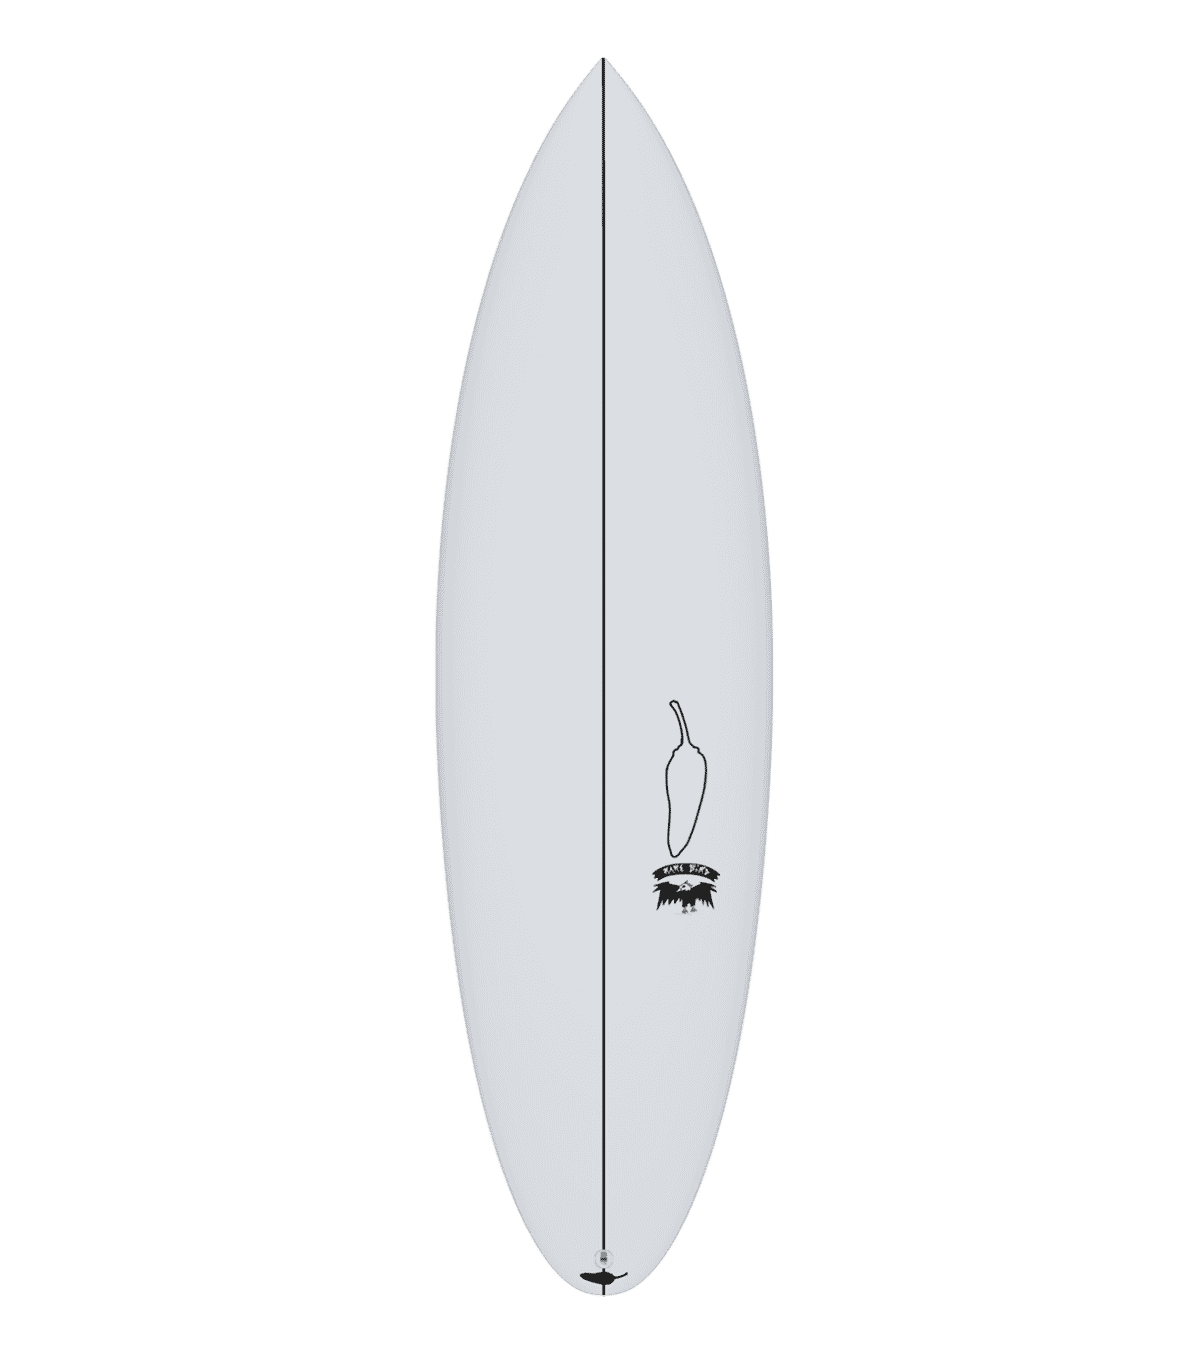 Comment faire du surf débutant ?